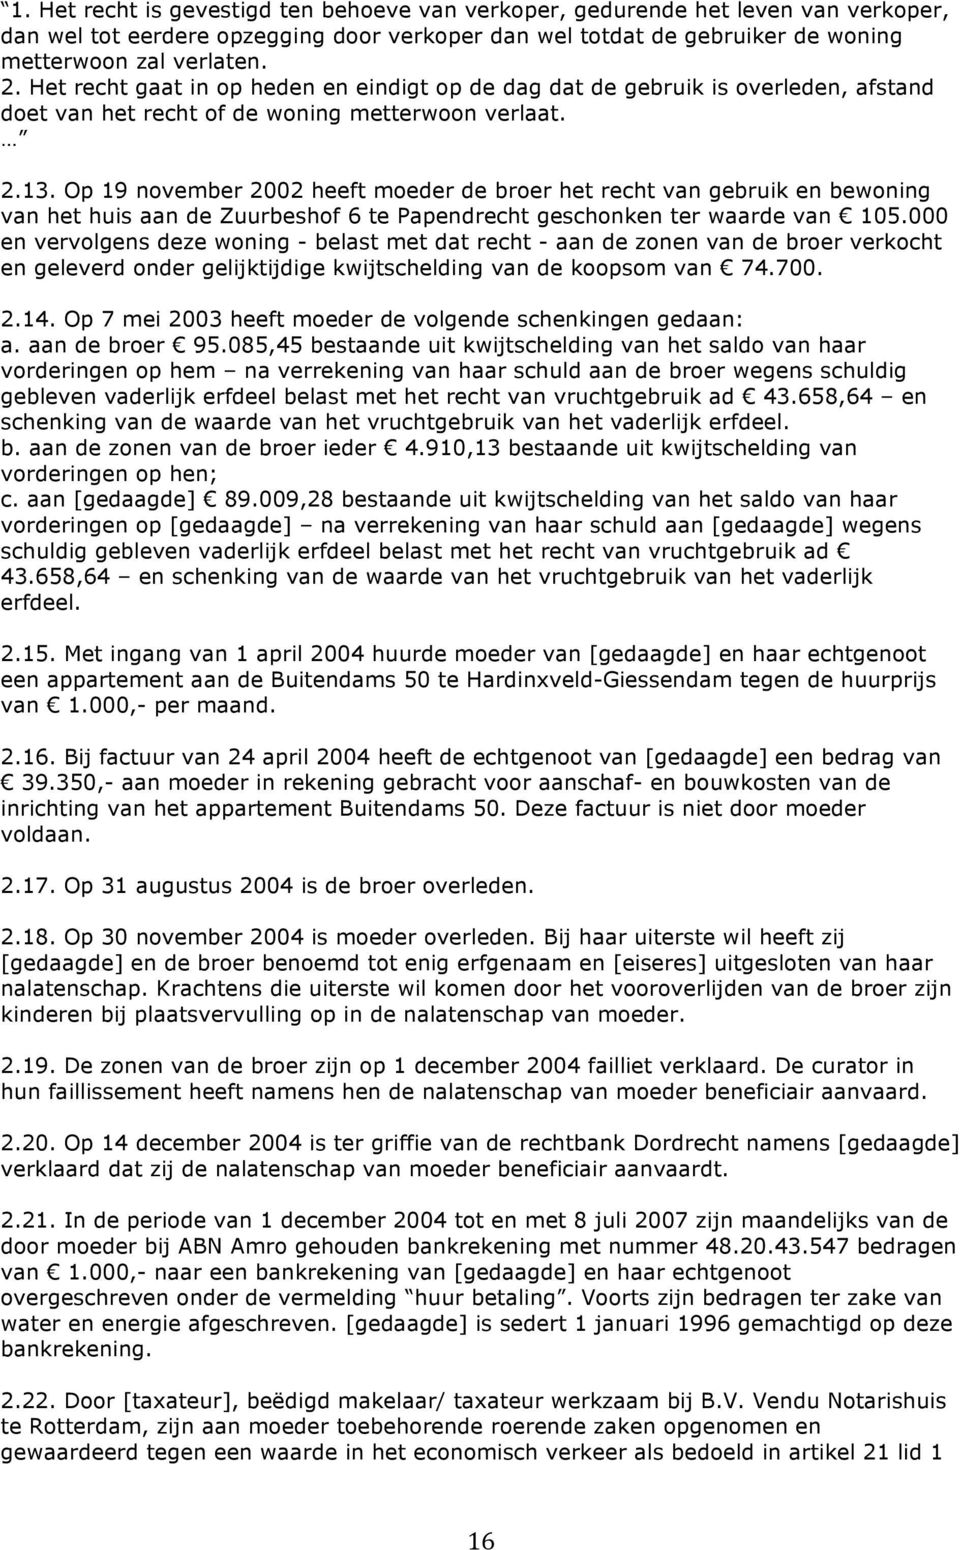 Op 19 november 2002 heeft moeder de broer het recht van gebruik en bewoning van het huis aan de Zuurbeshof 6 te Papendrecht geschonken ter waarde van 105.